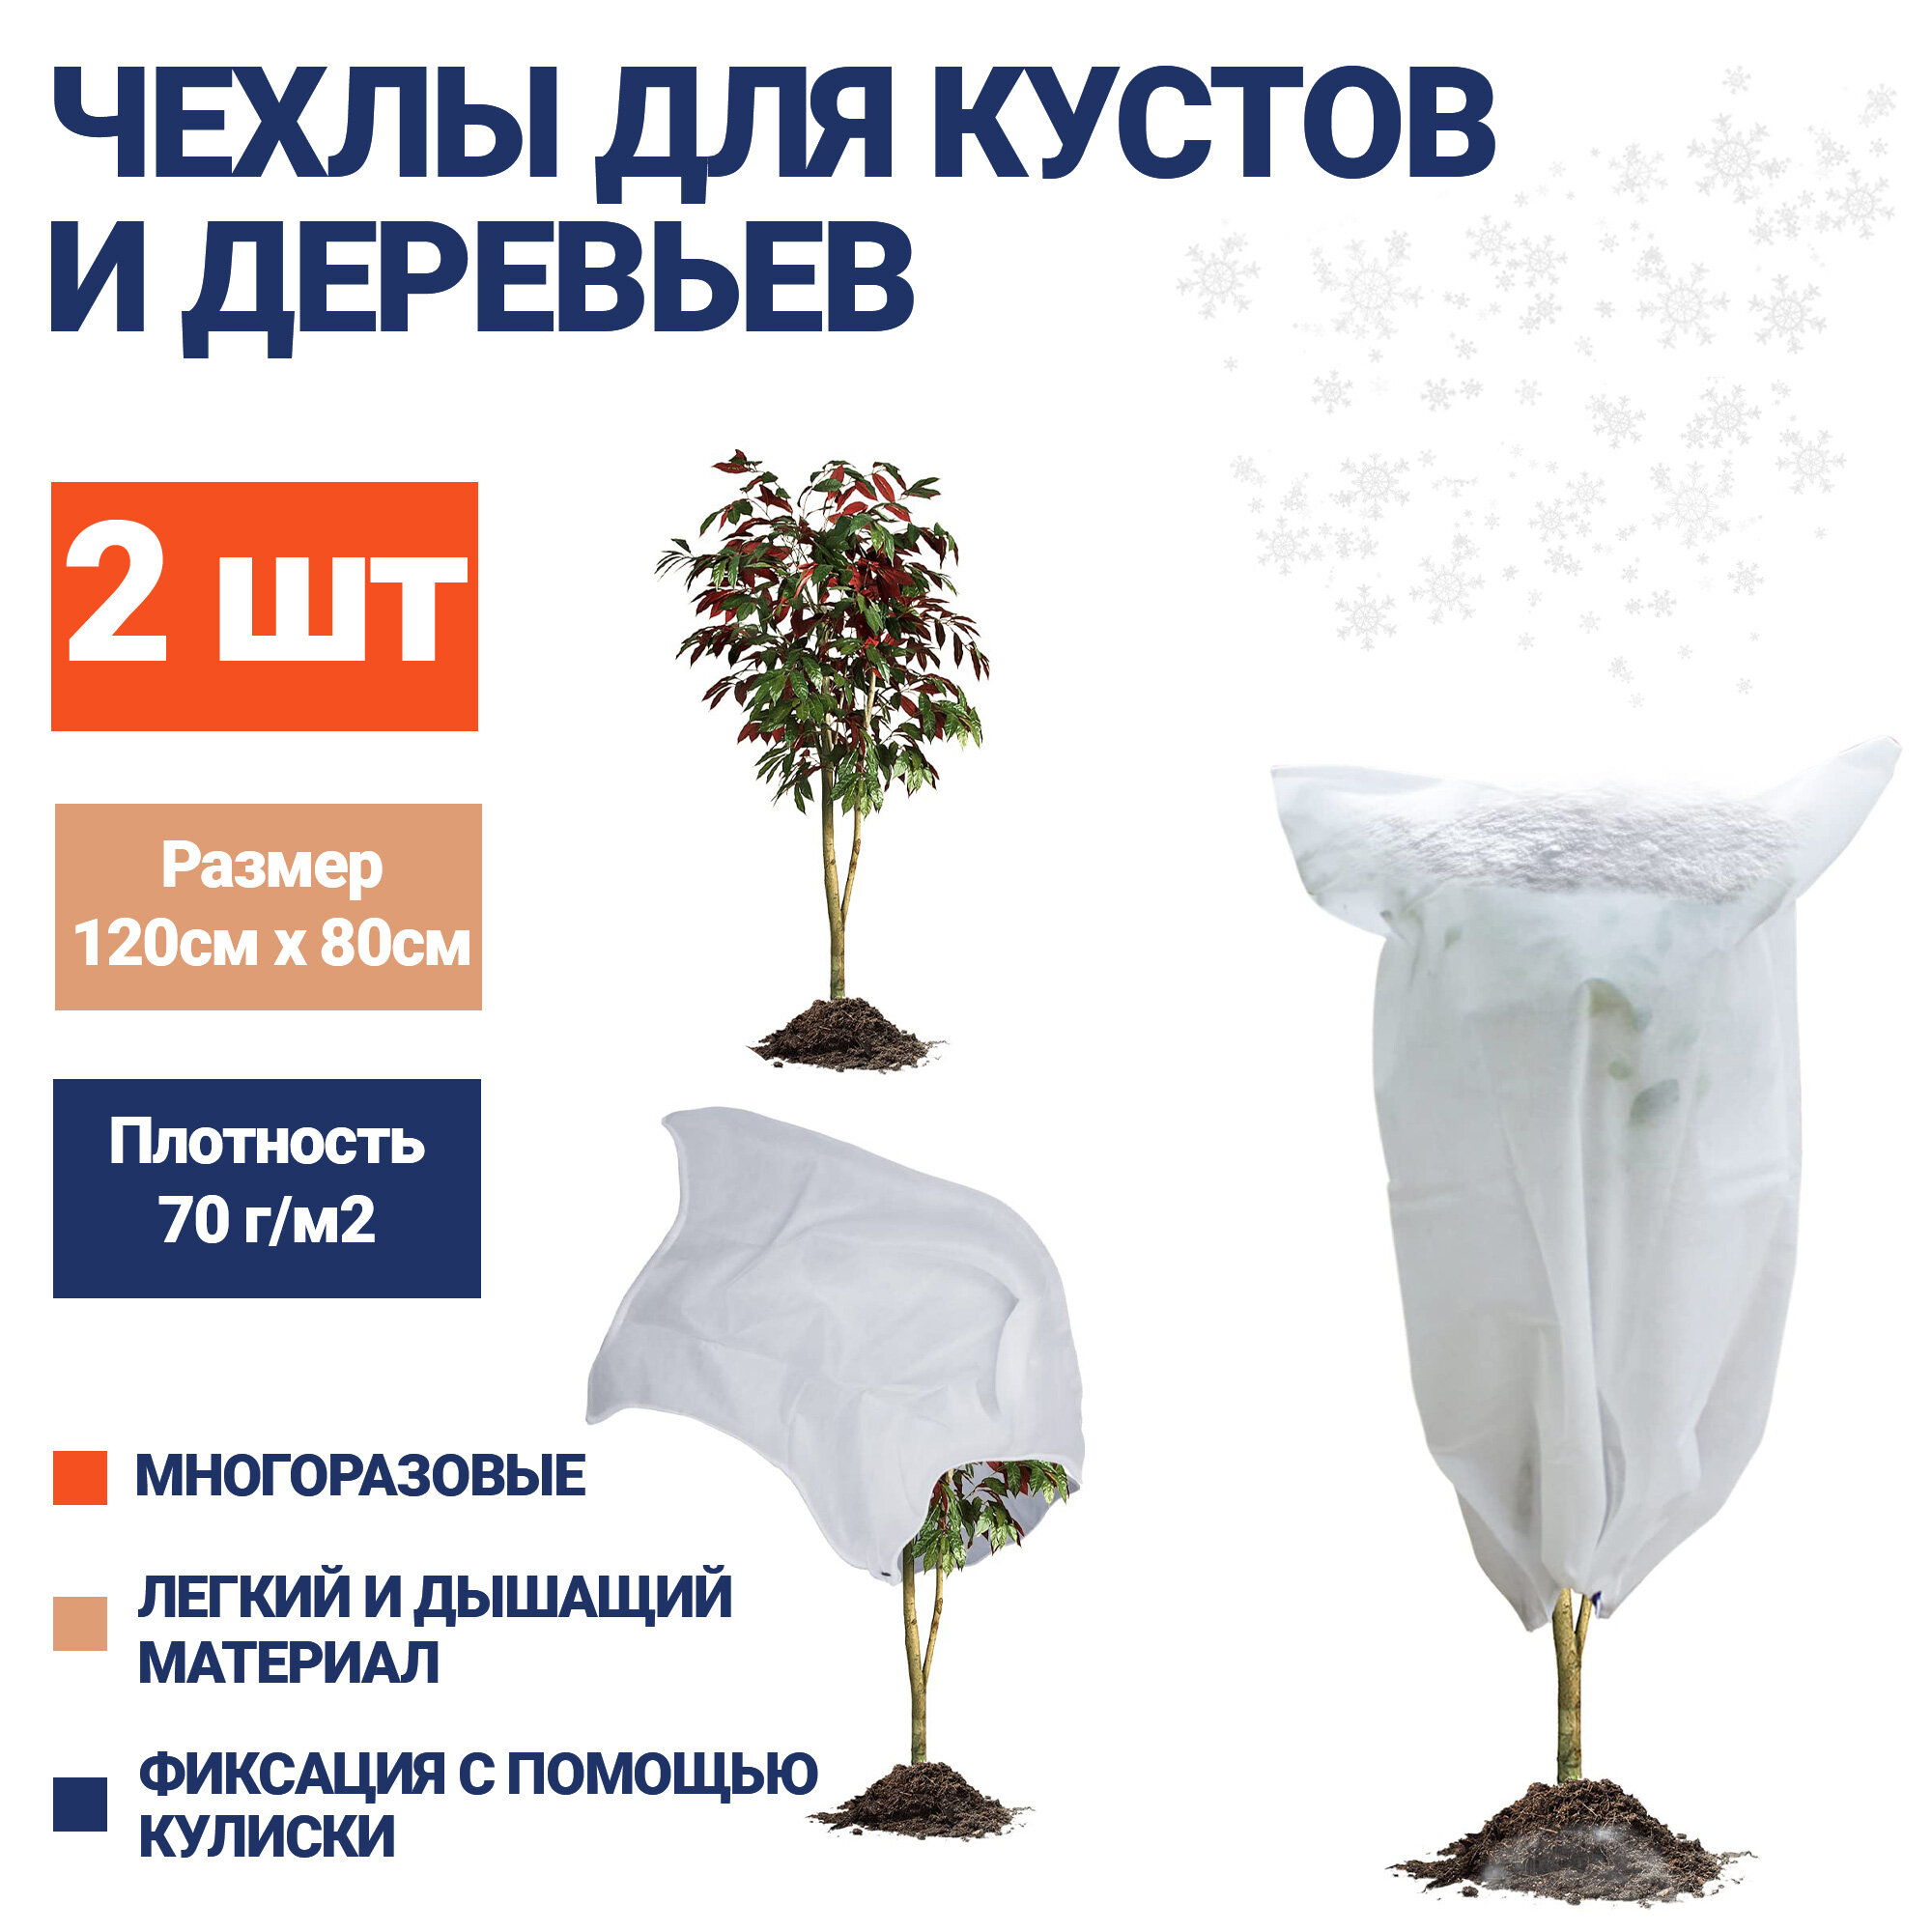 Чехол для укрытия растений на зиму EZGOODZ 120x80 см 2шт спанбонд 70г/м2. Нетканый укрывной материал для роз туй зимнее укрытие от мороза